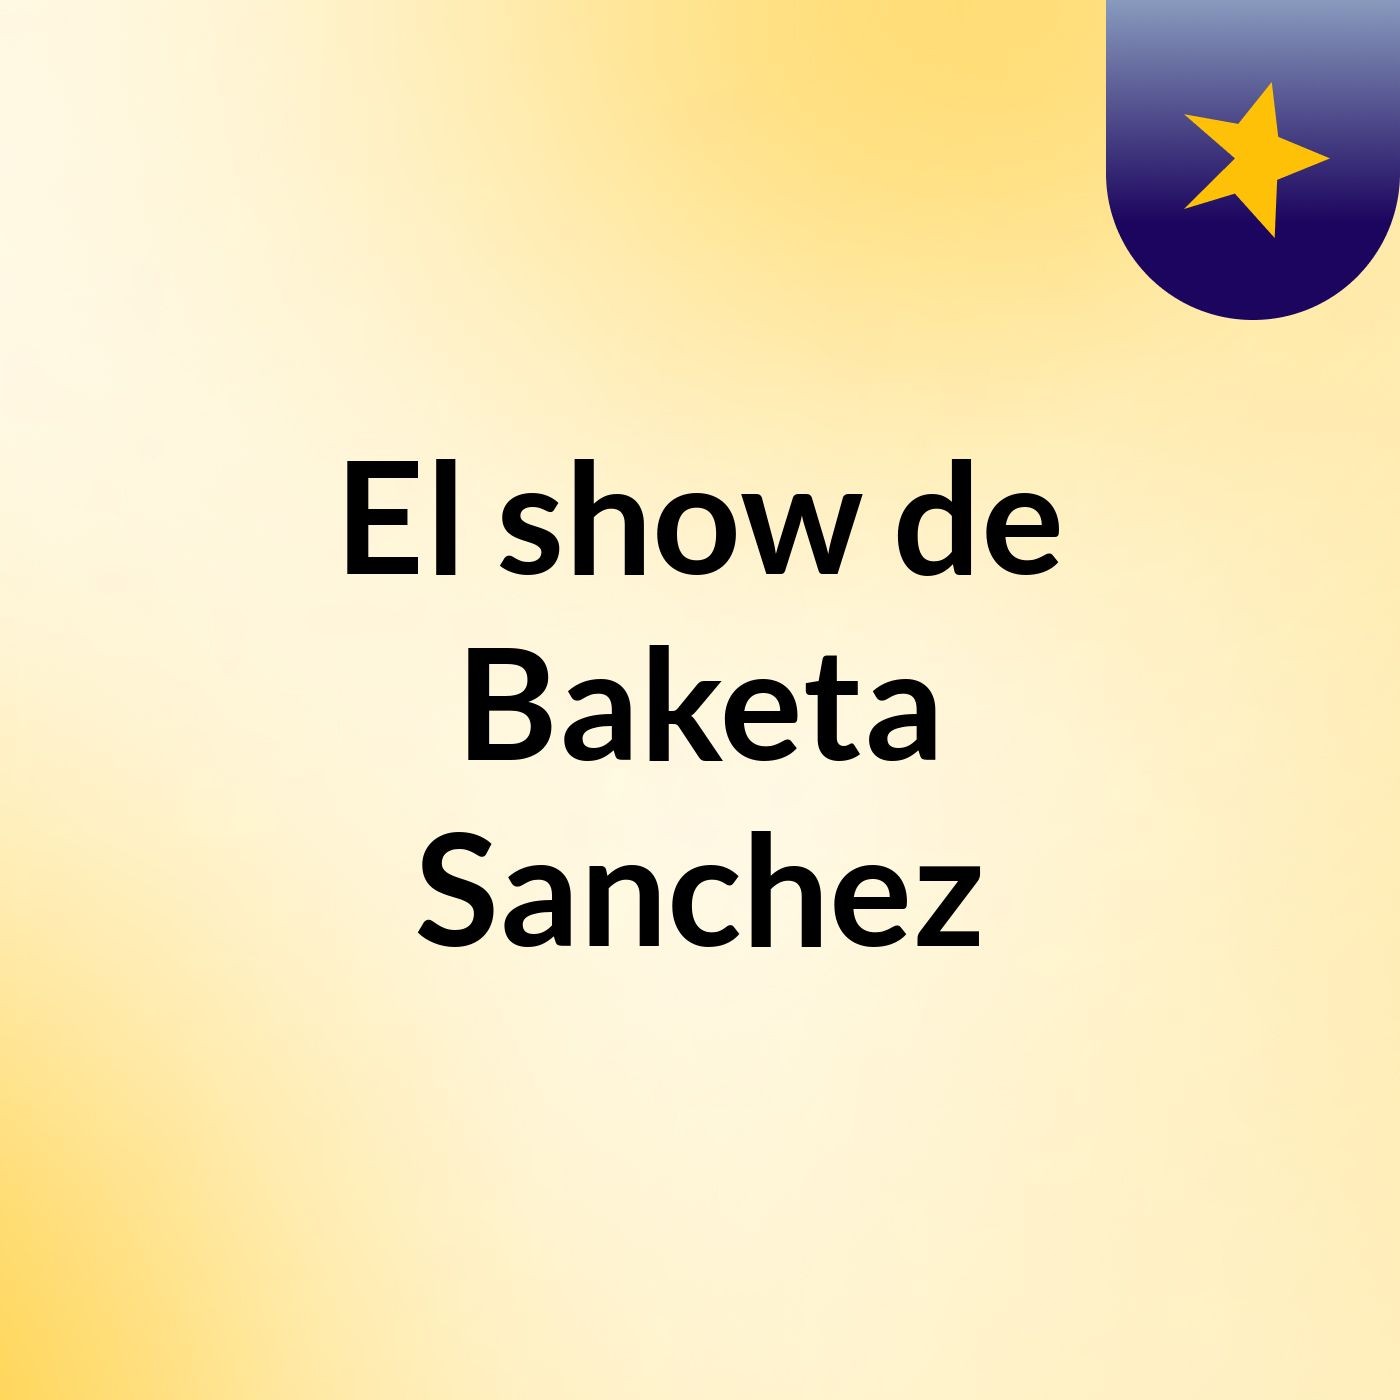 El show de Baketa Sanchez